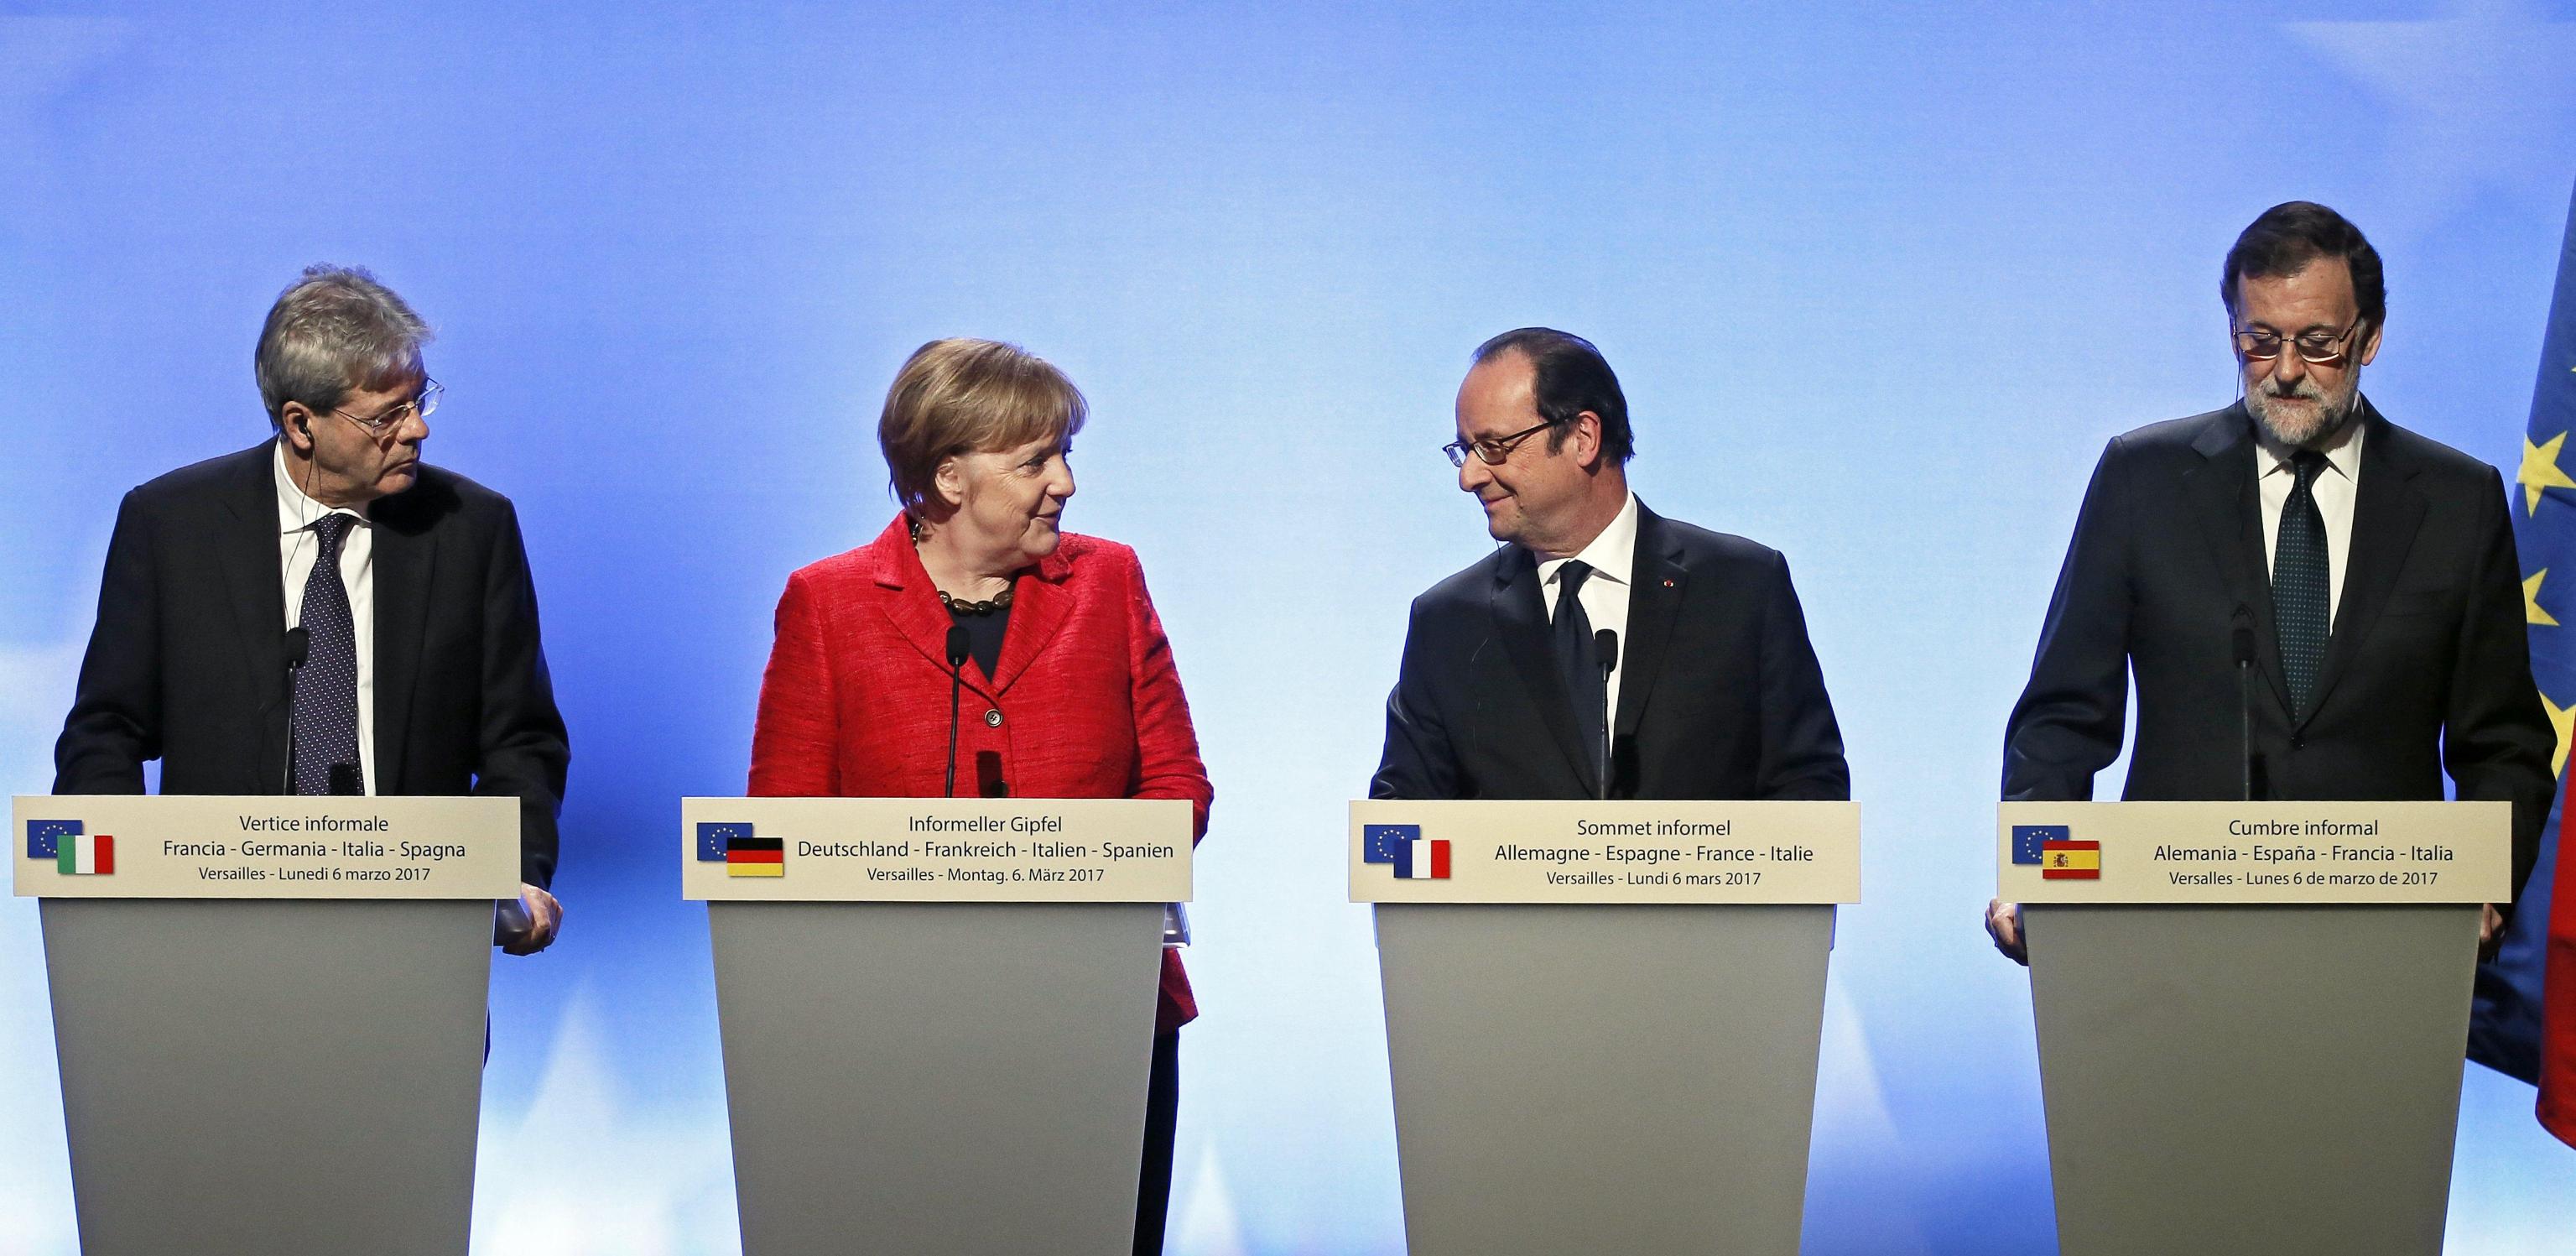 Vertice Versailles, Hollande e Merkel: "Dopo Brexit ok a Ue a più velocità"Vertice Versailles, Hollande e Merkel: "Dopo Brexit ok a Ue a più velocità"